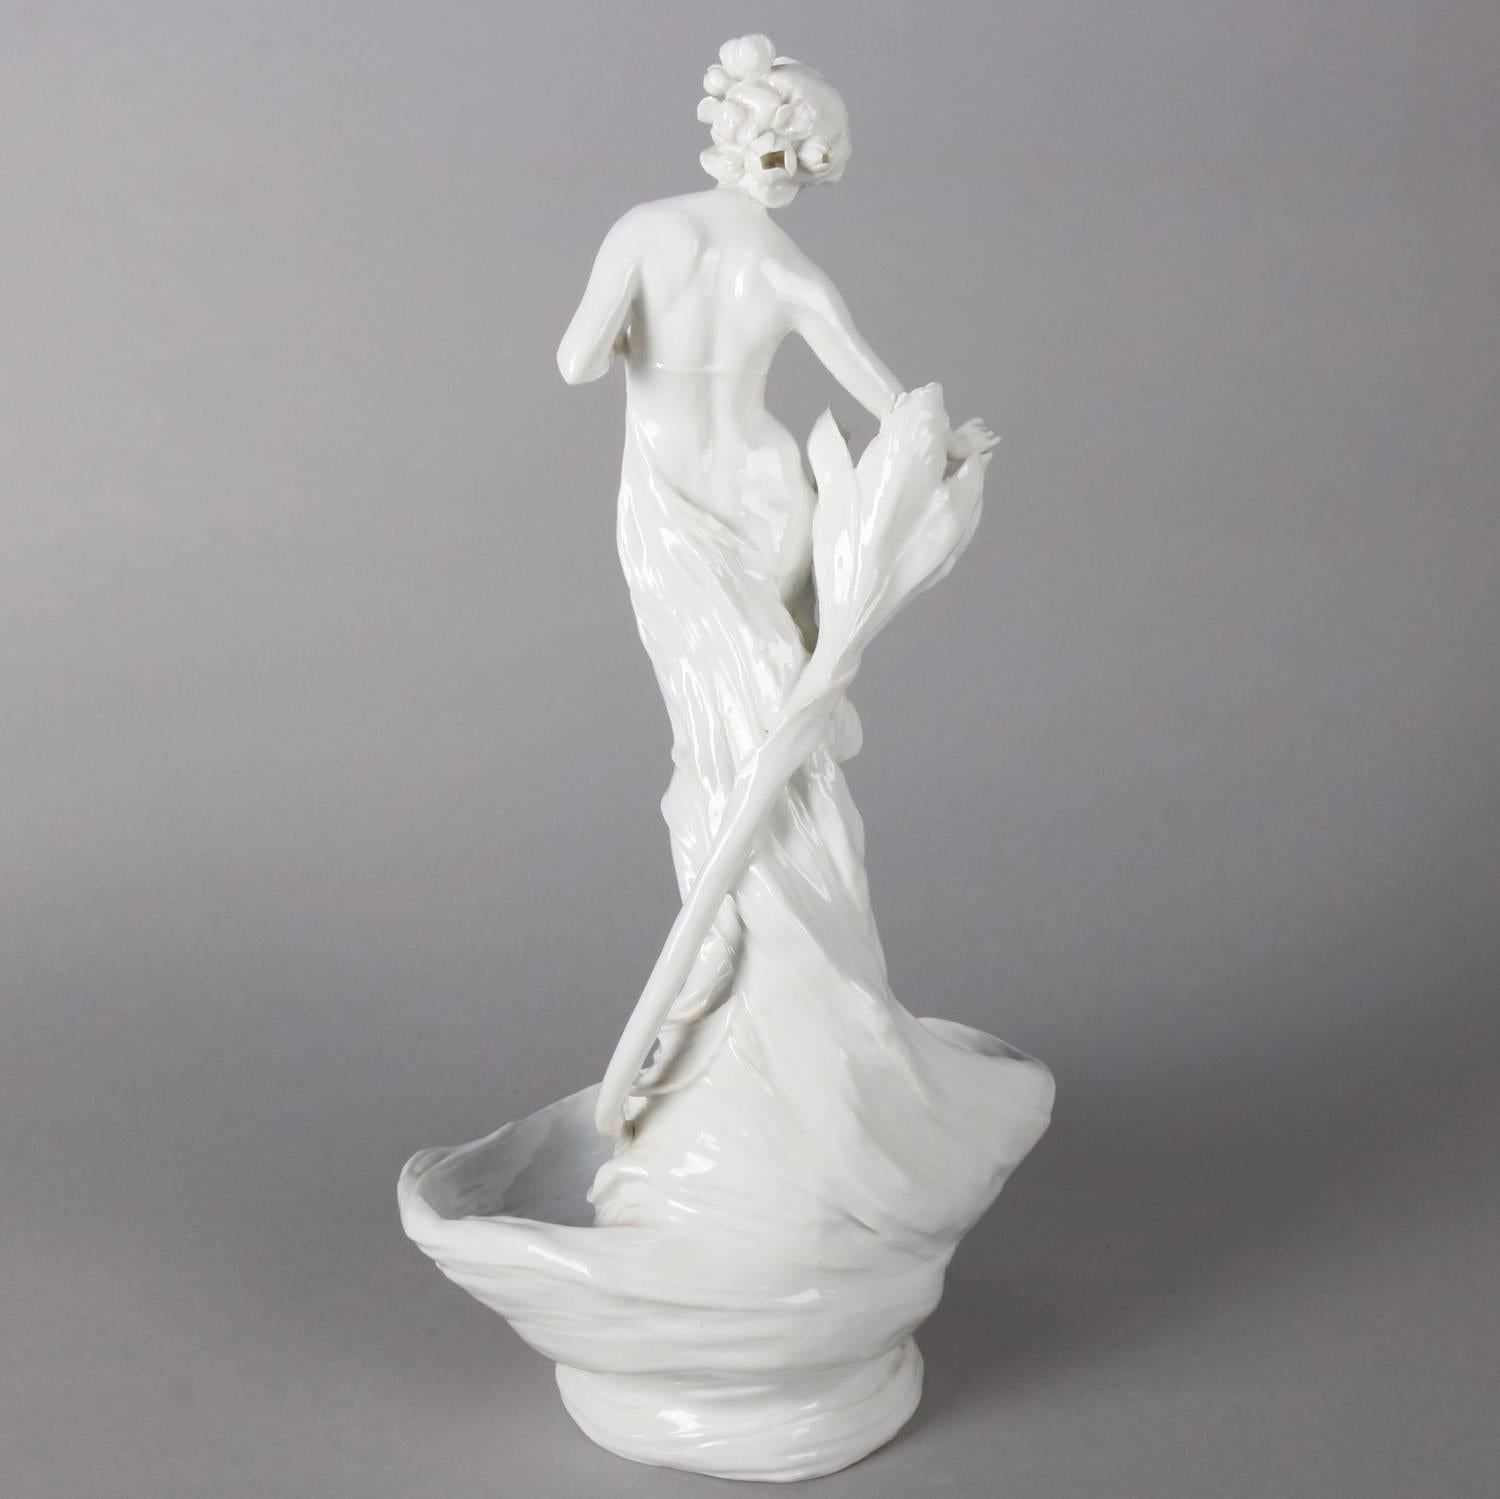 Art Nouveau Style Figural Blanc-de-Chine Porcelain Display Bowl, Partial Nude 1